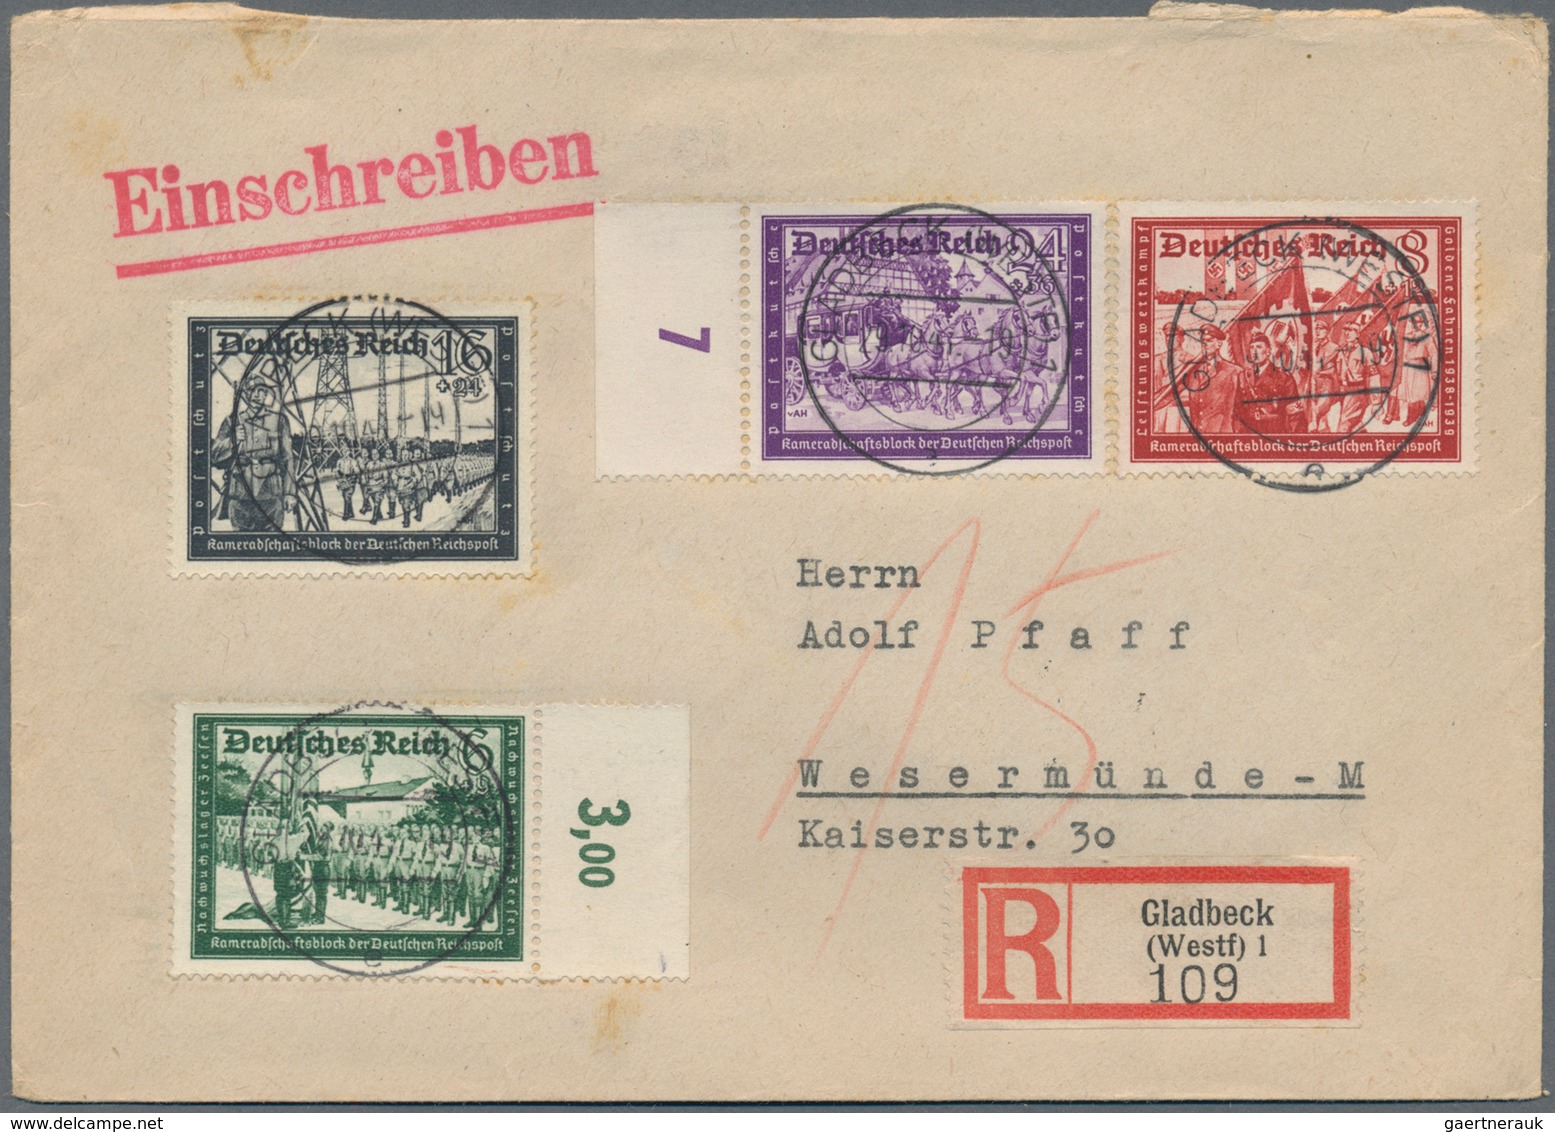 Deutsches Reich: 1814/1944 (ca.), schöne Partie Belege ab Vorphila/Altdeutschland mit viel Deutschem